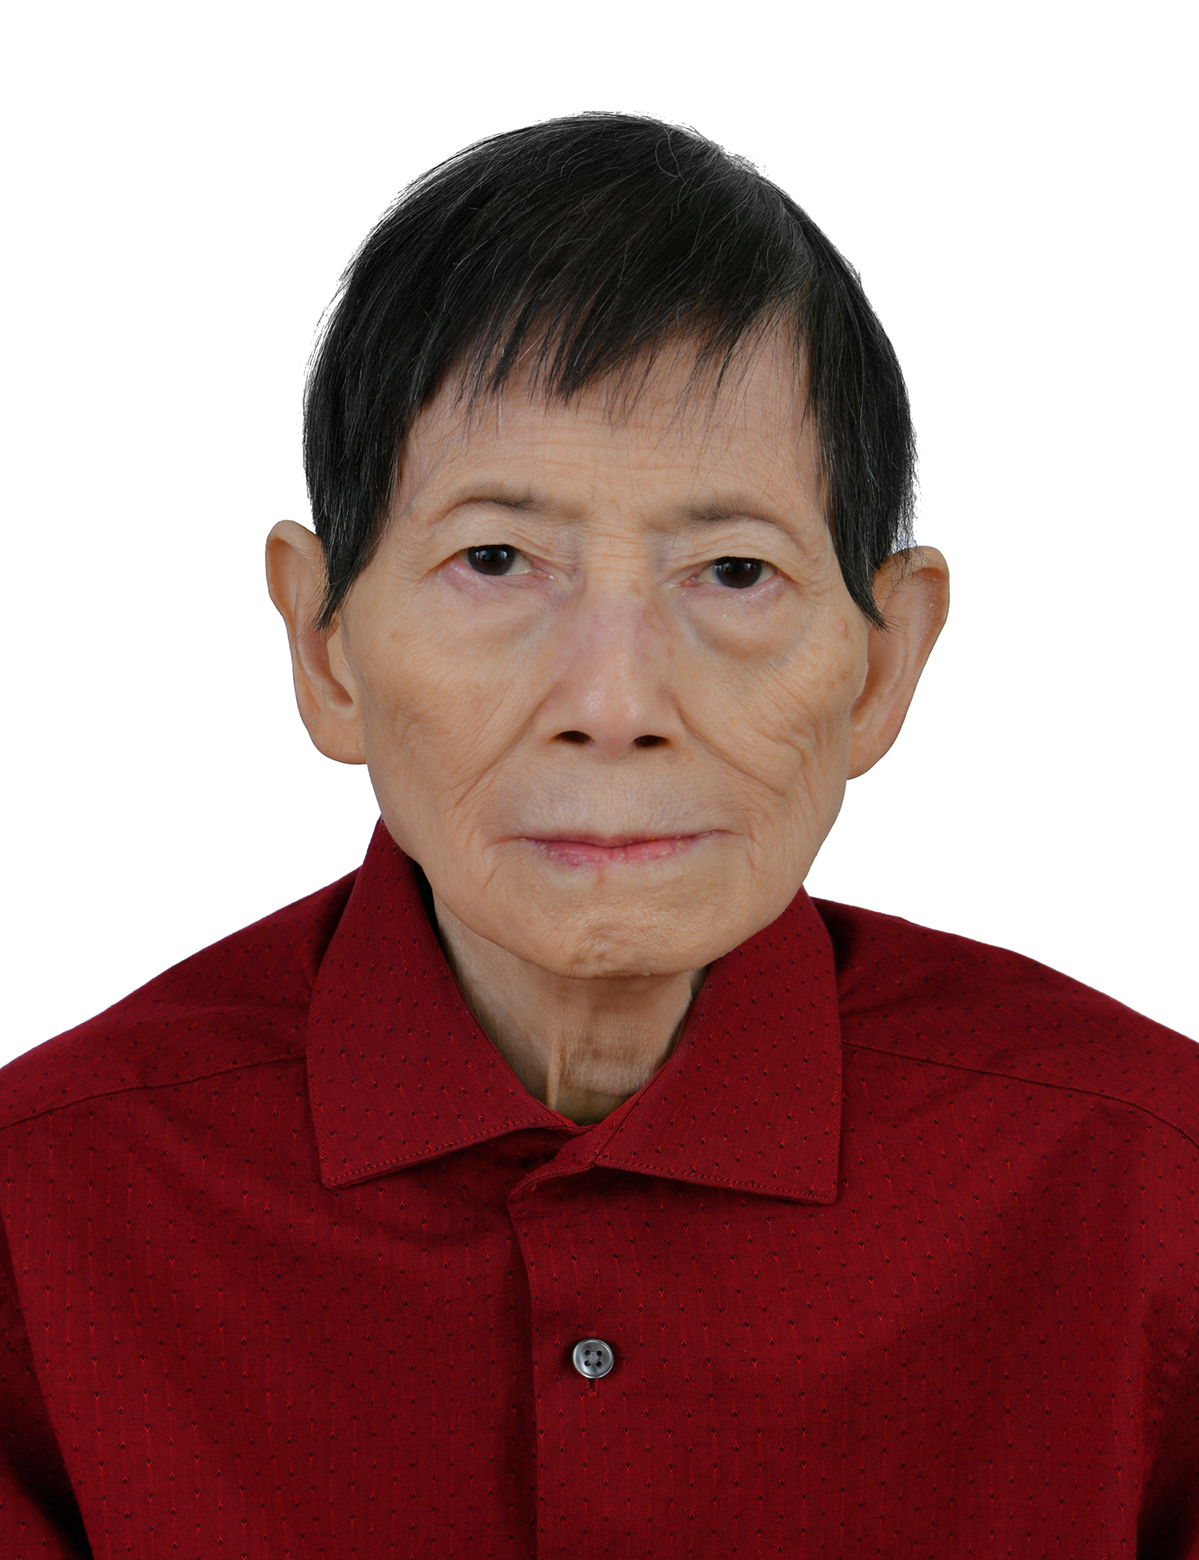 Ms. Xiu Ling He